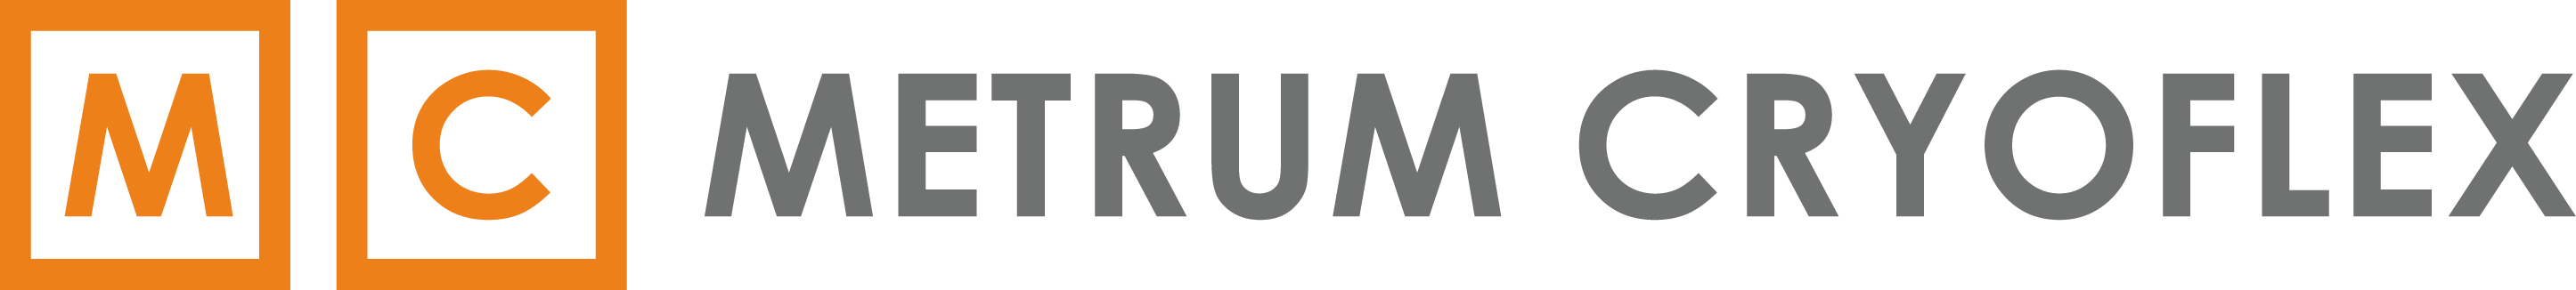 Logo Metrum